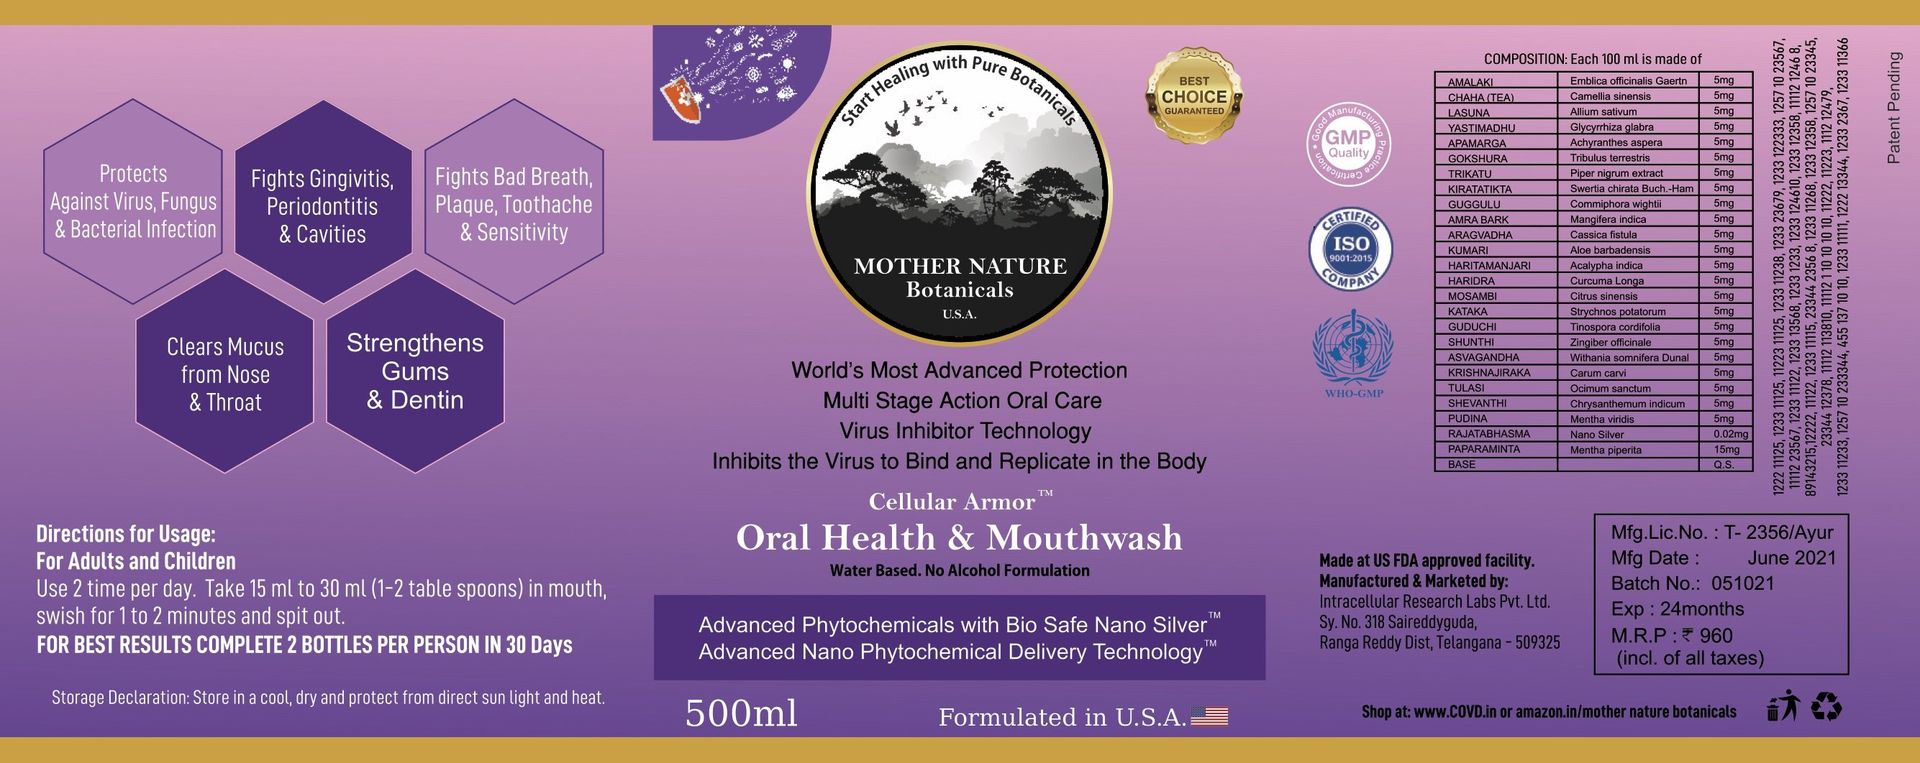 Mother Nature Botanical's Oral Health & Mouthwash - hfnl!fe